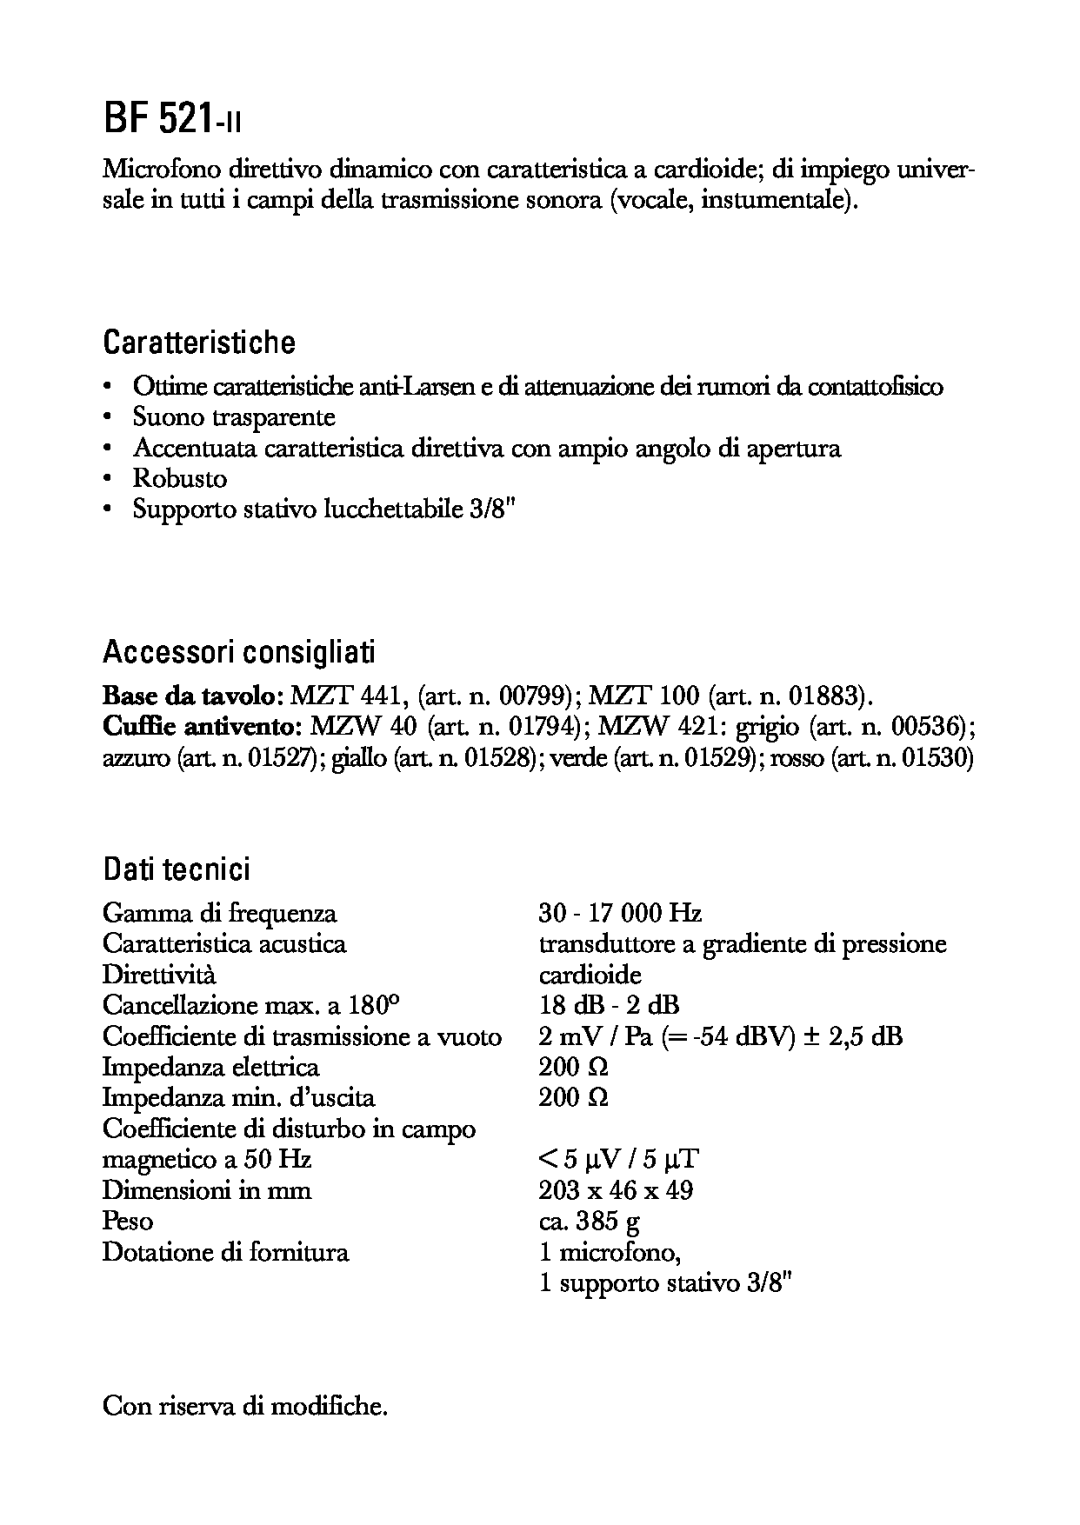 Sennheiser BF 521-II manual Caratteristiche, Accessori consigliati, Dati tecnici 